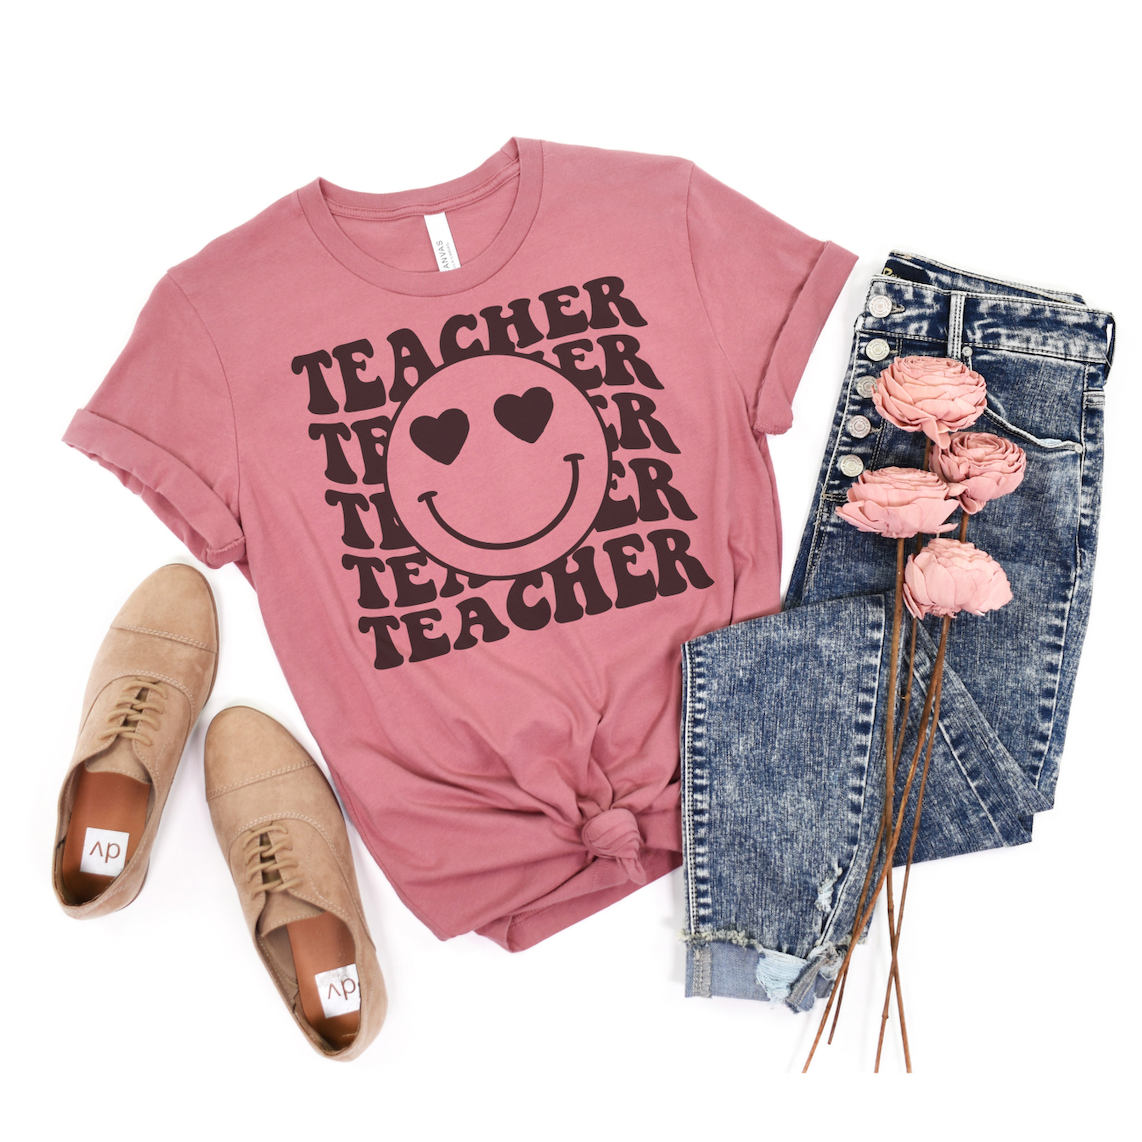 TEACHER...TEACHER...TEACHER